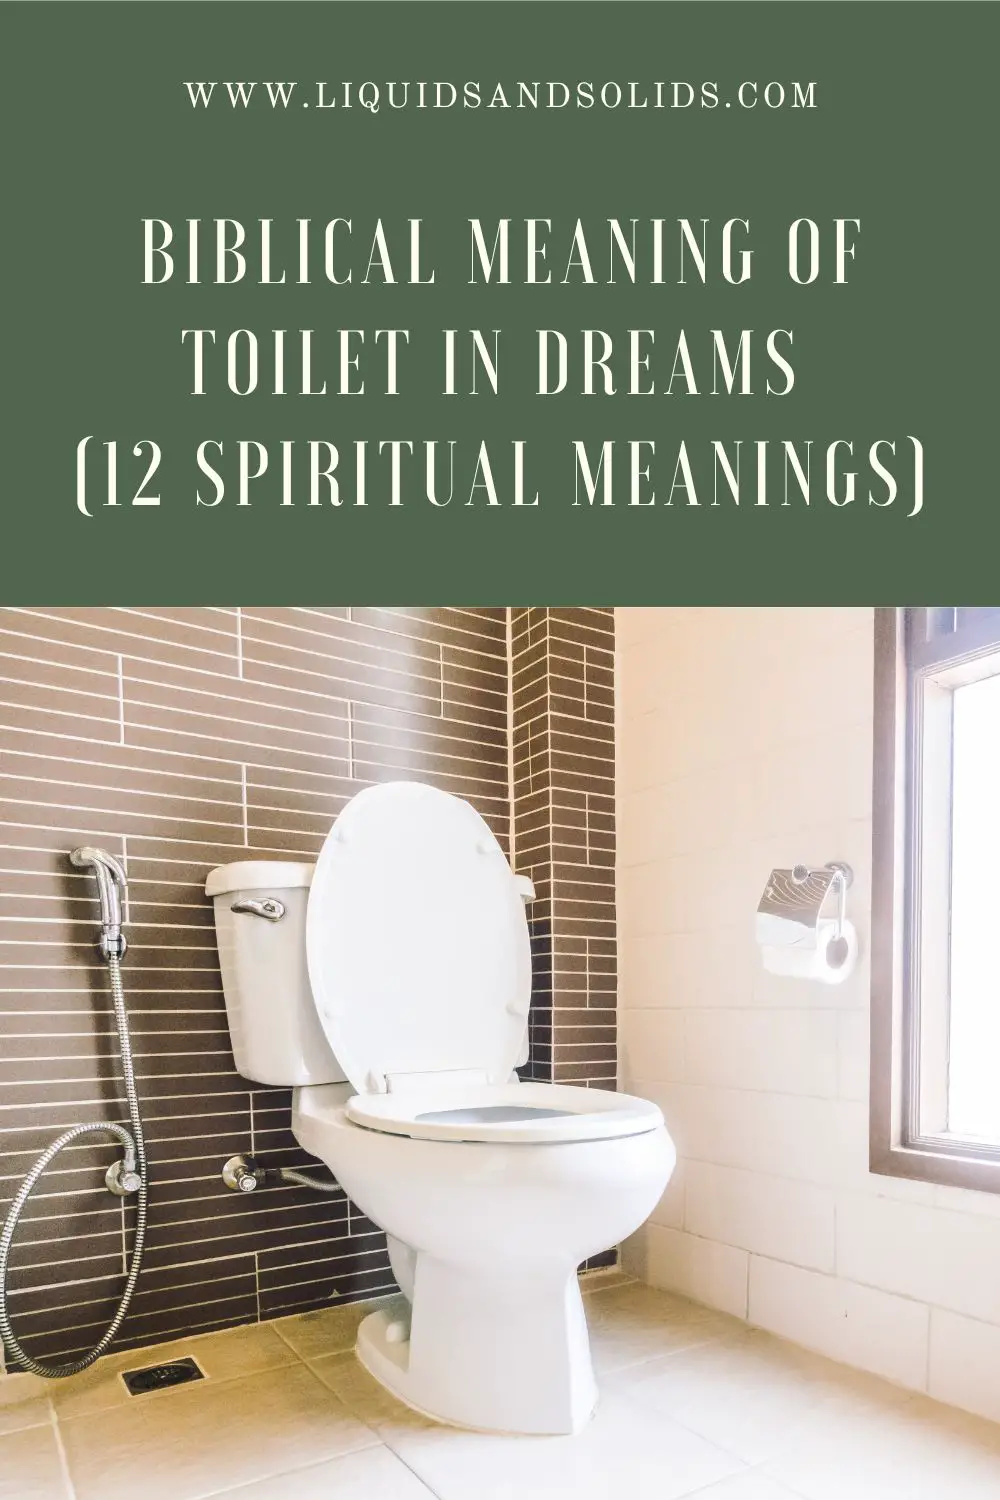 Dreams About Poop In Toilet